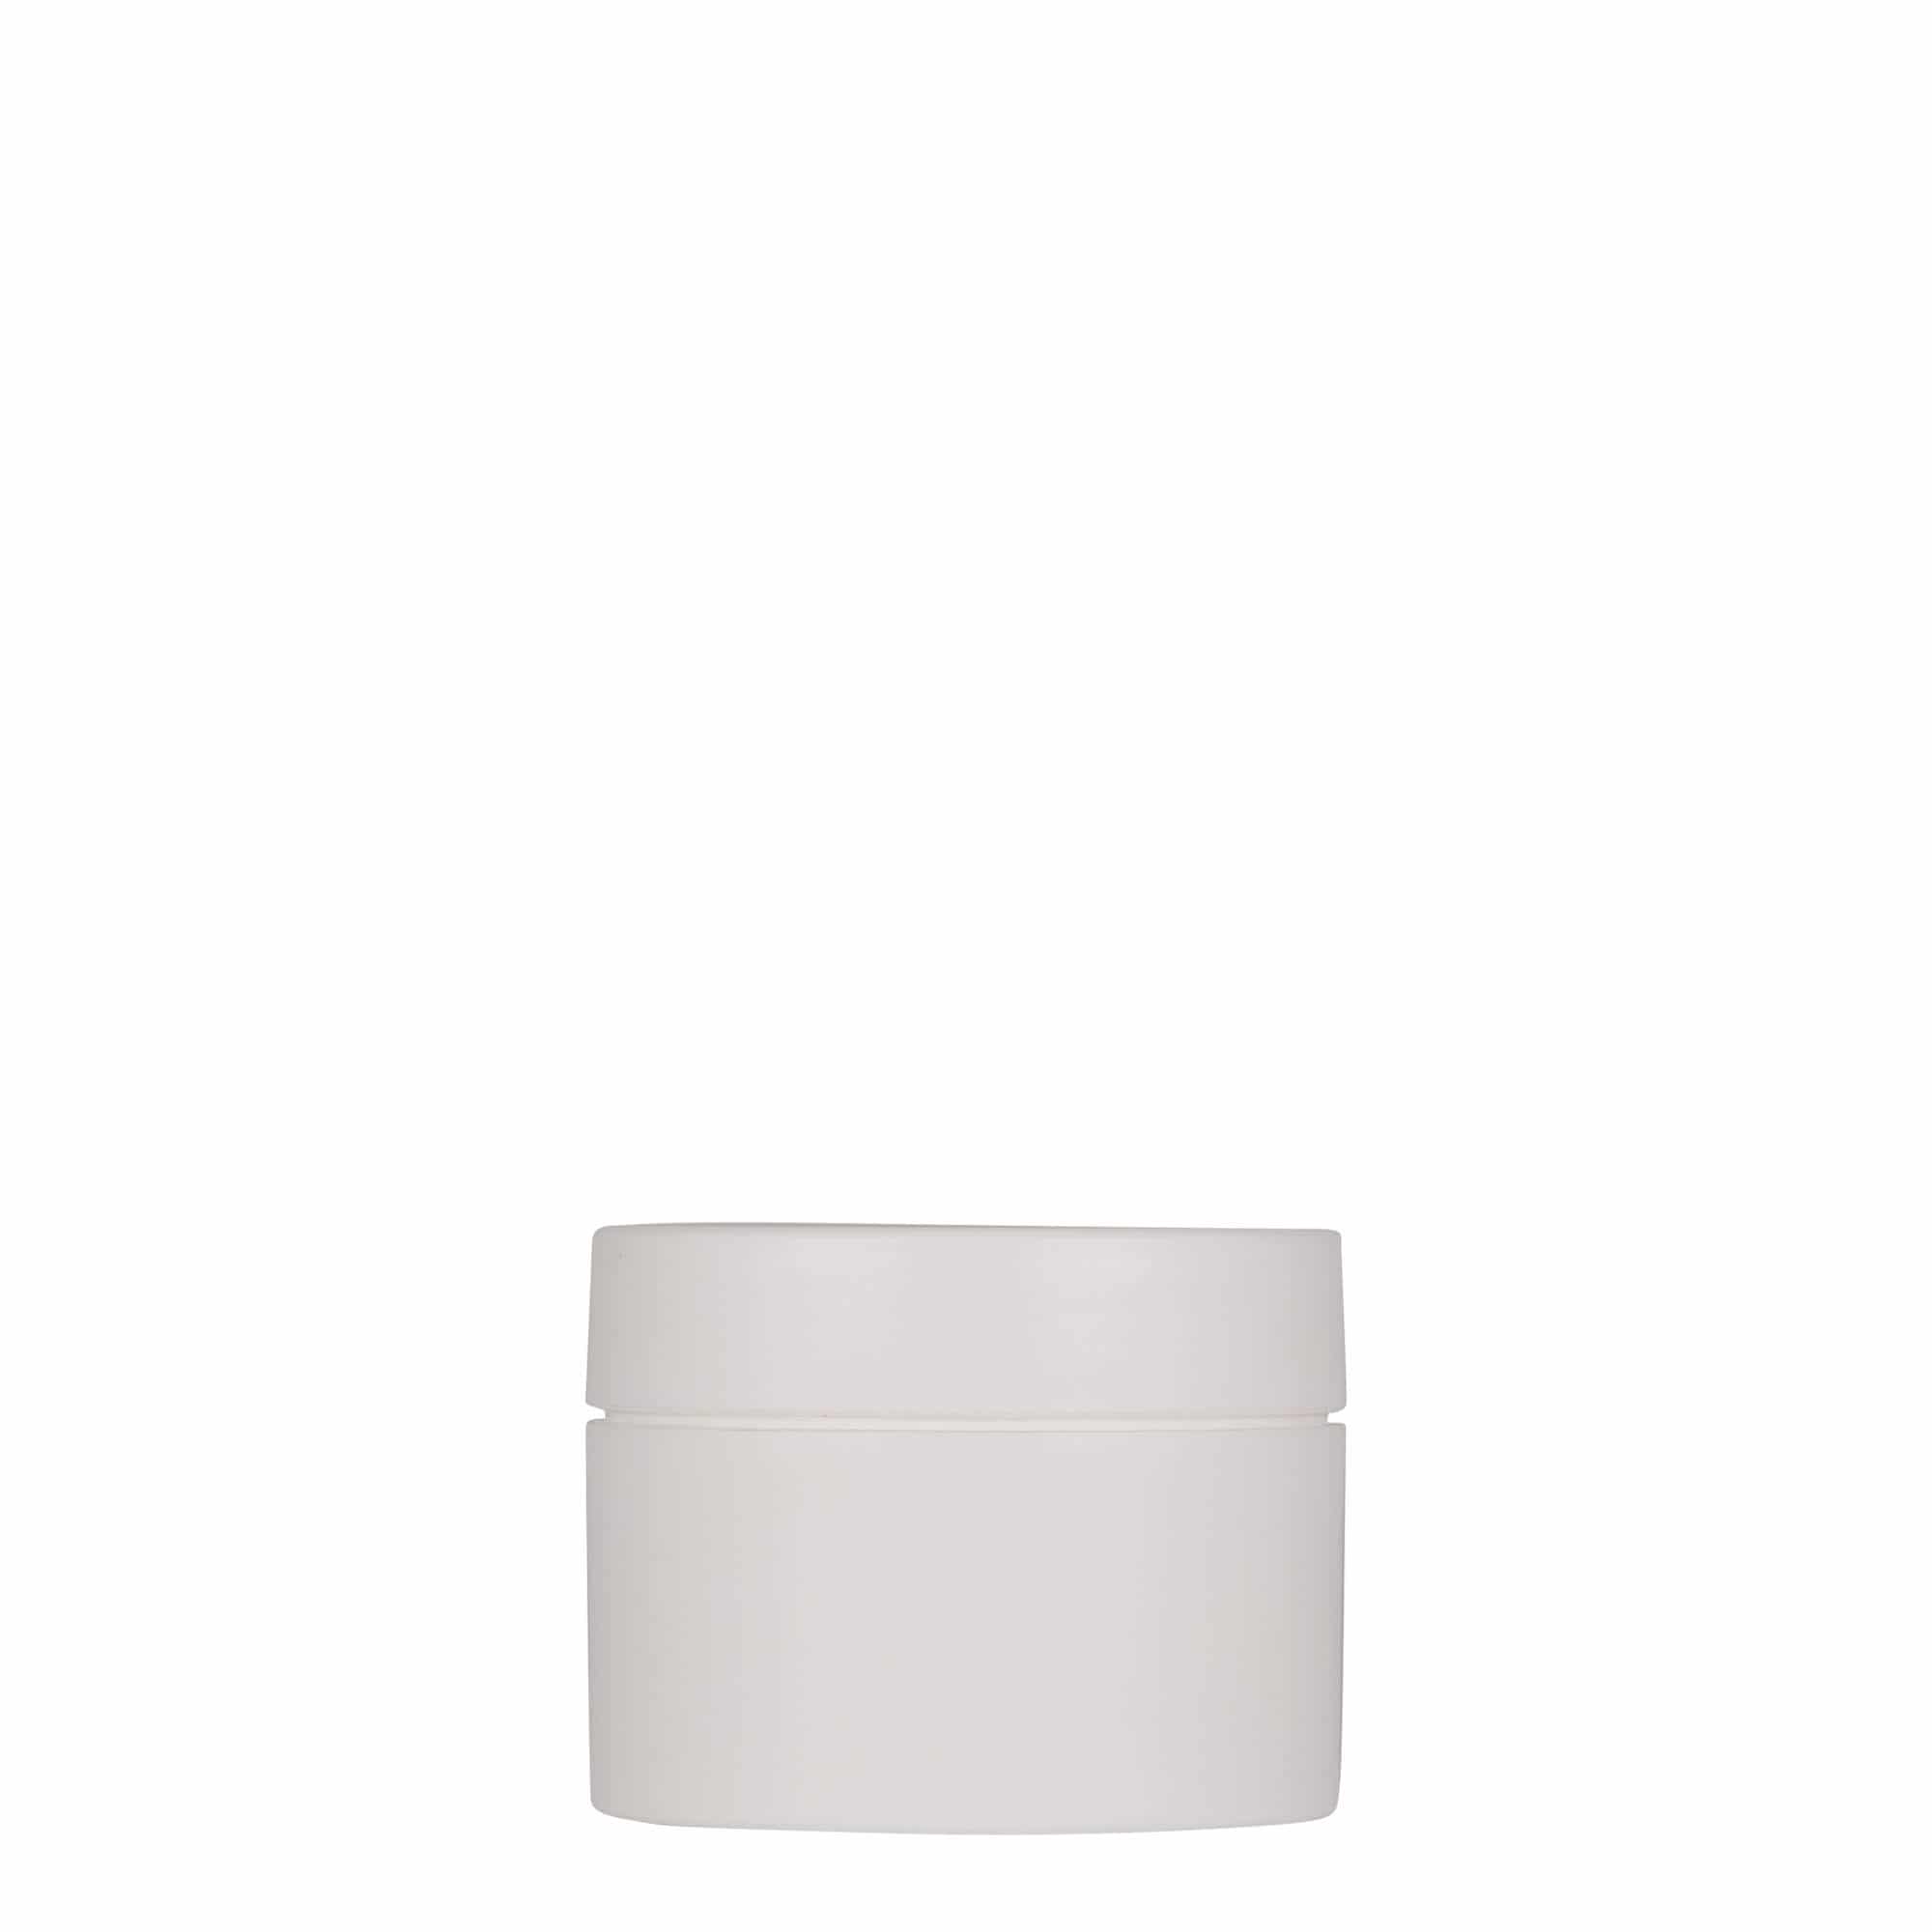 50 ml plastic jar 'Antonella', PP, white, closure: screw cap